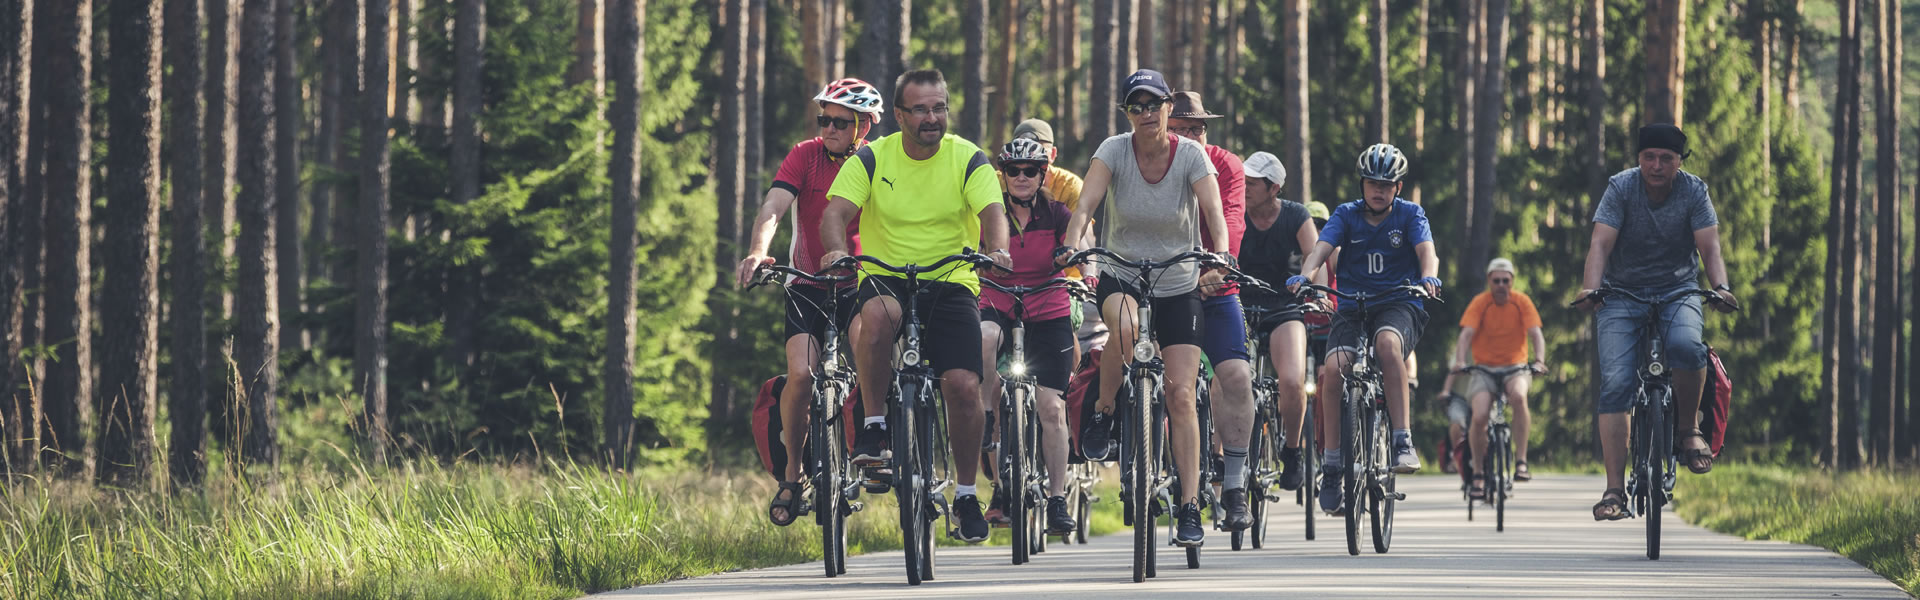 Aktivurlaub von Wanderungen bis Radreisen - durch die Masuren, das Baltikum, Nationalparks & viele mehr!